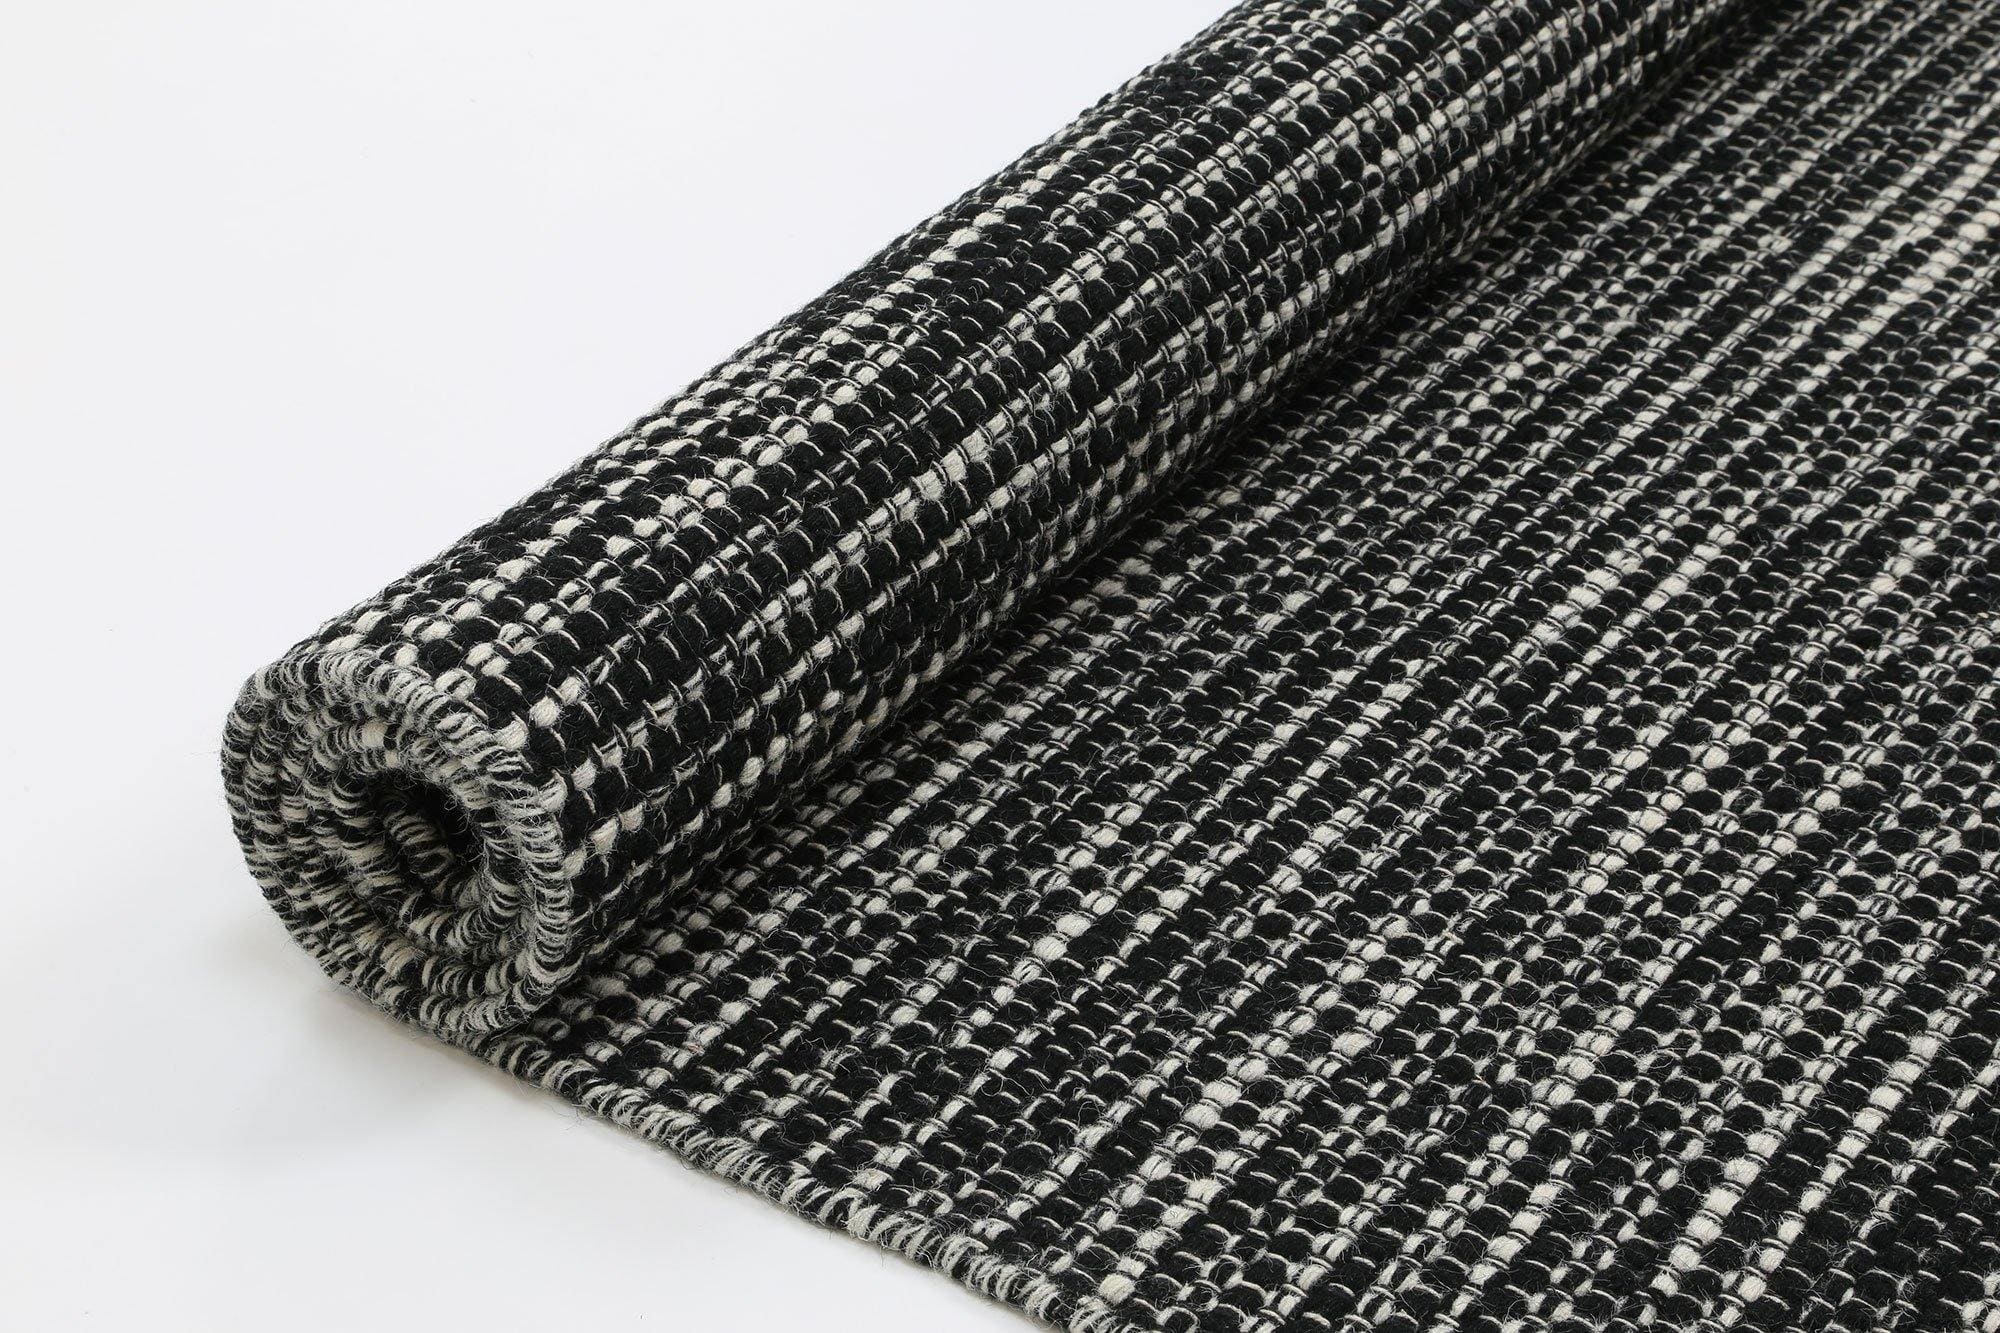 Brand Ventures RUGS Nordi Black Reversible Wool Rug